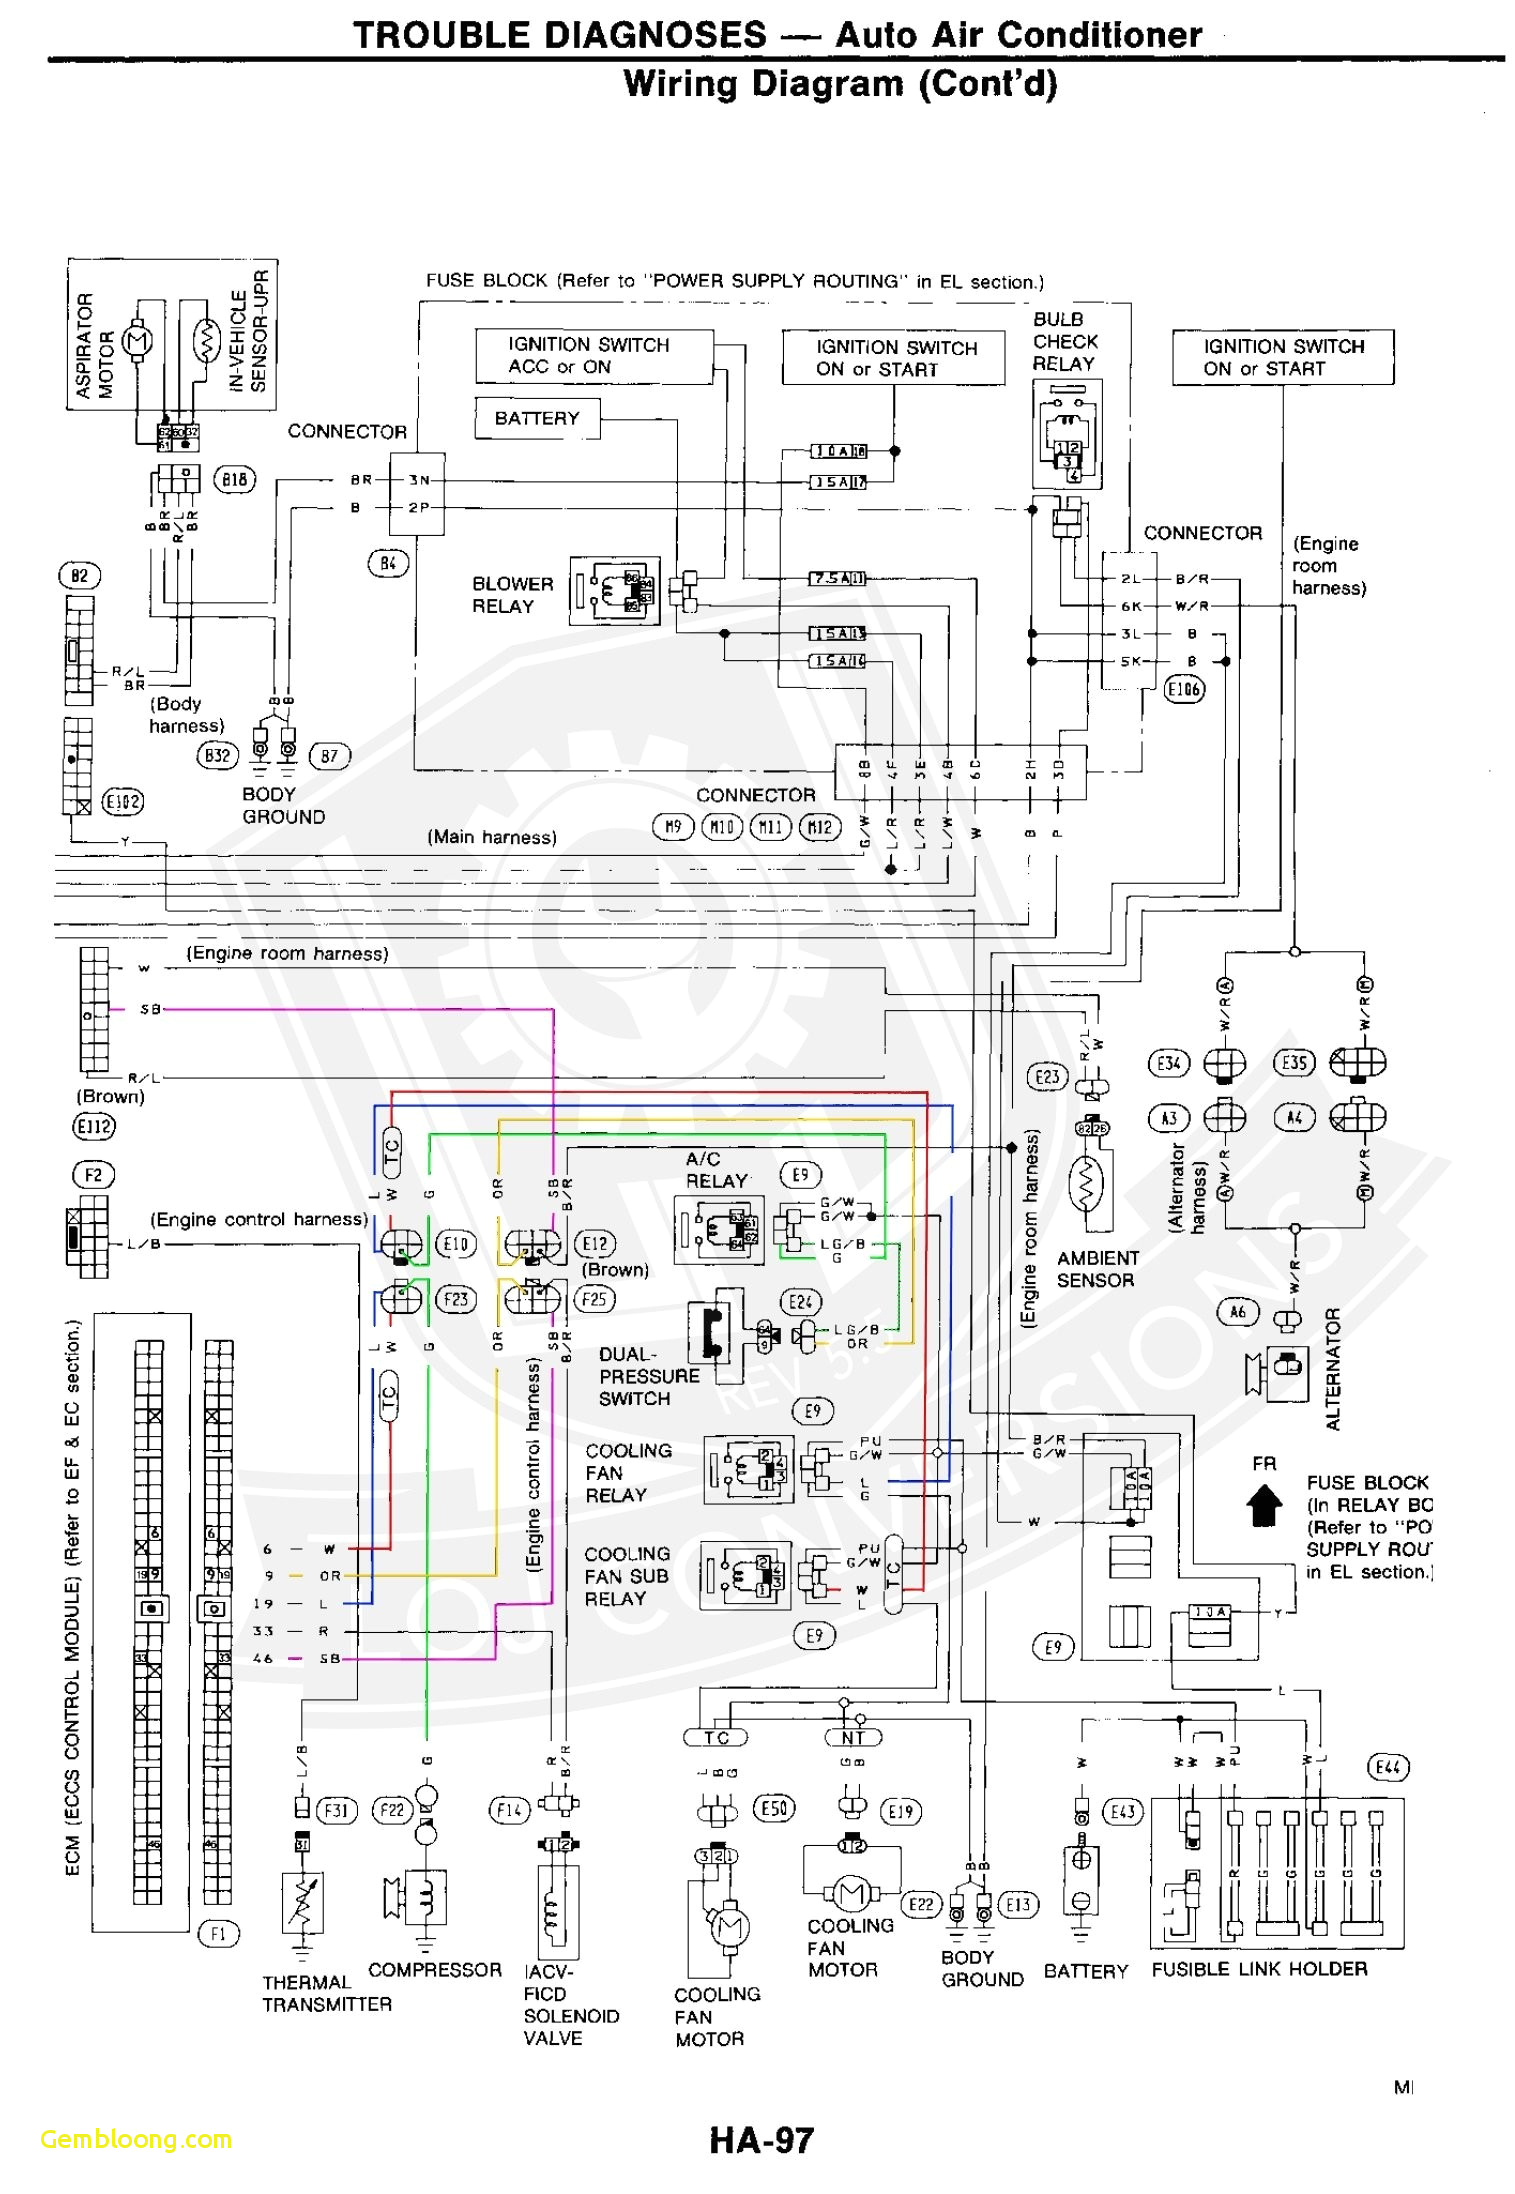 bmw wiring system diagram wiring diagram img bmw wiring diagram system wds deutsch bmw e36 wiring